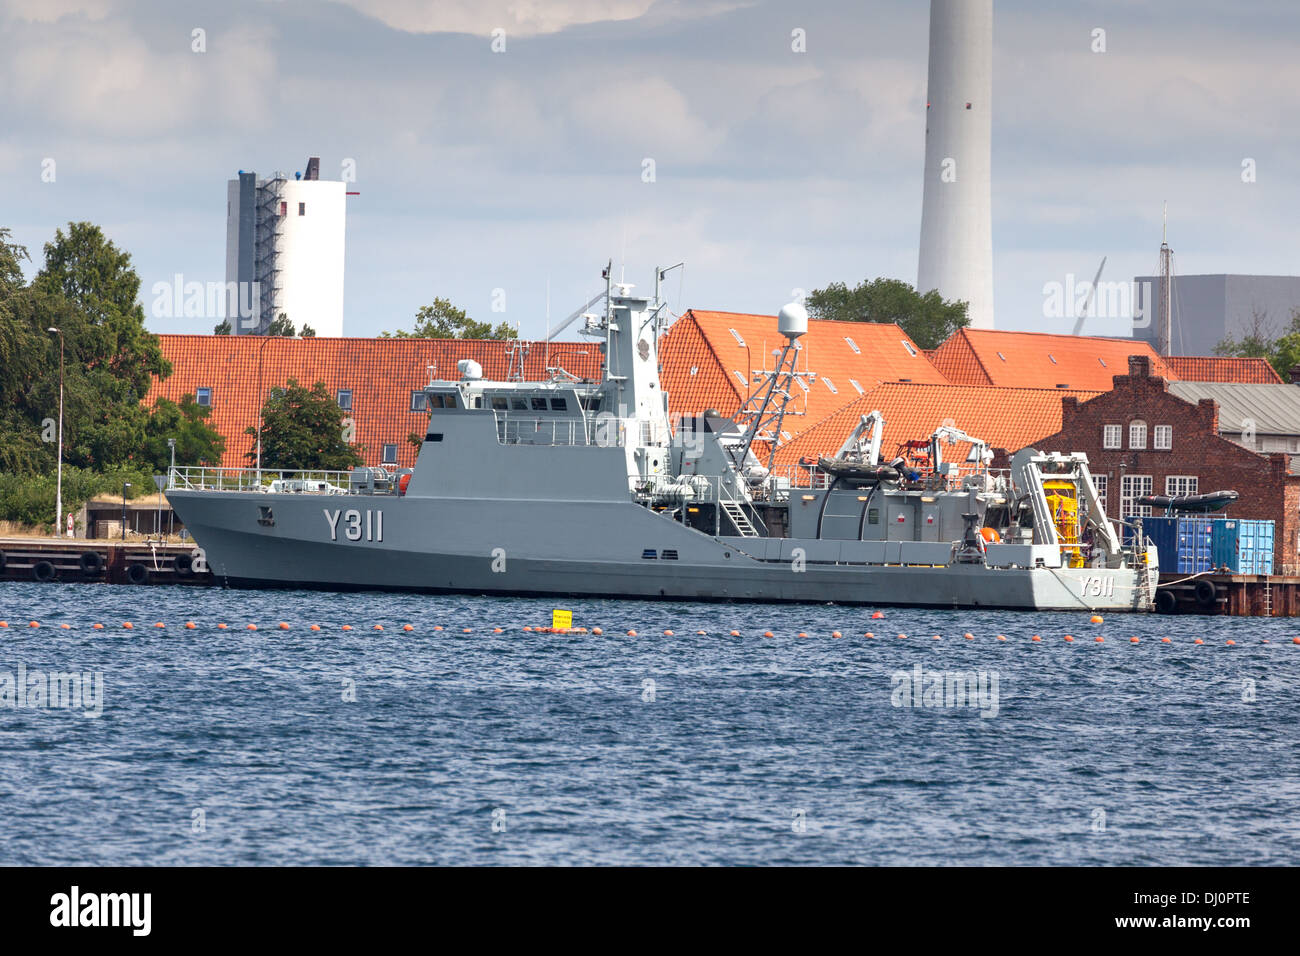 Formation de plongée de la marine danoise, navire Y311 (SØLØVEN au port de Copenhague Danemark SEALION Banque D'Images